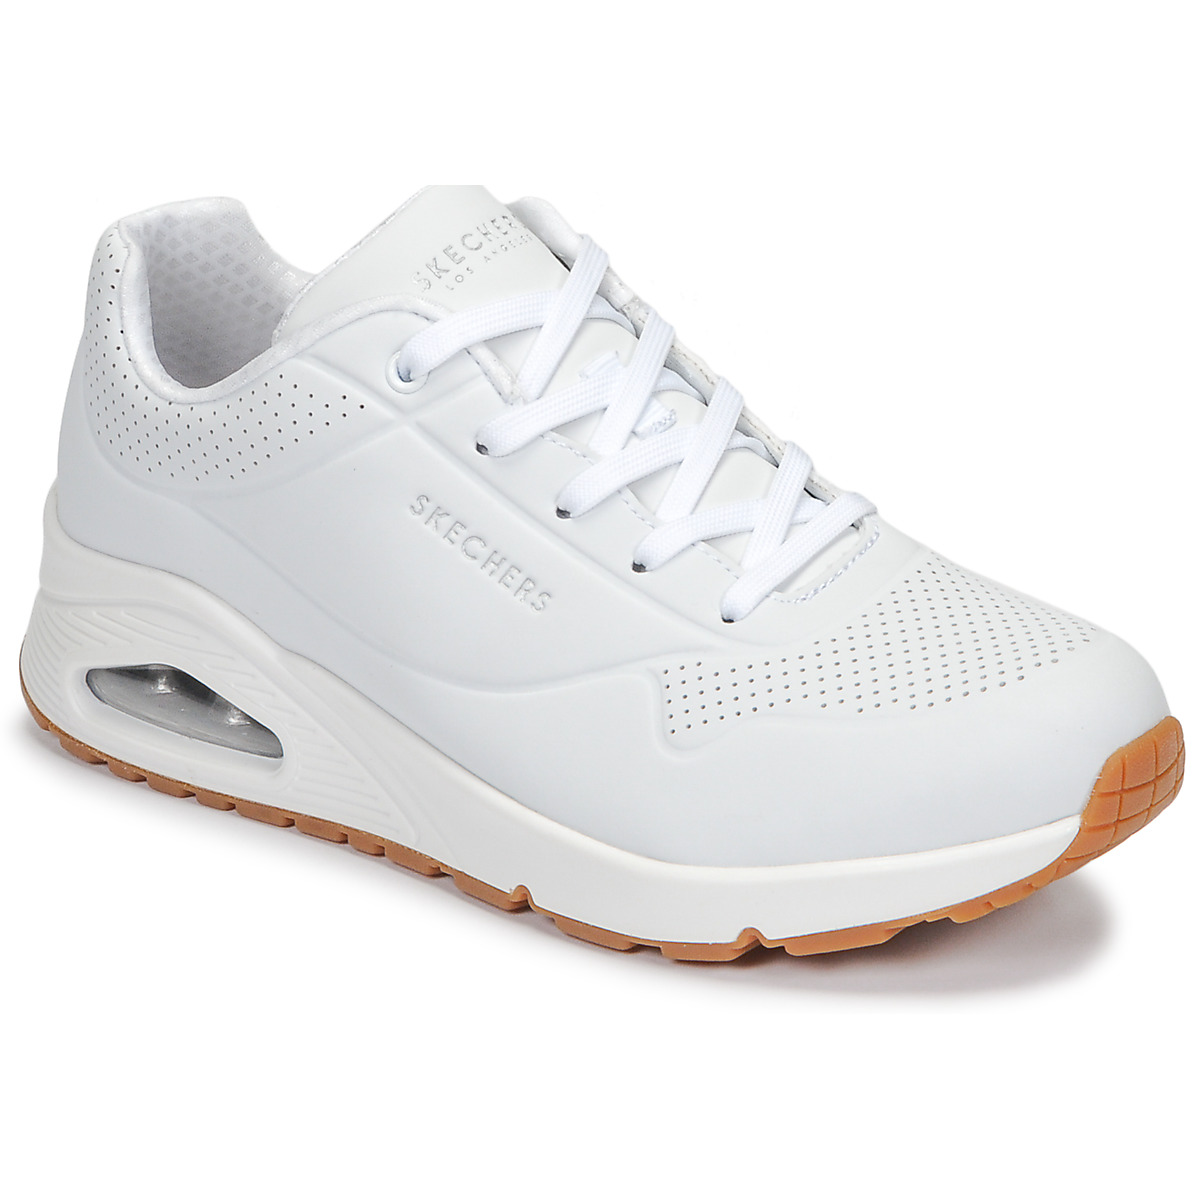 Skechers UNO Bianco - Consegna gratuita | Spartoo.it ! - Scarpe Sneakers  basse Donna 59,50 €